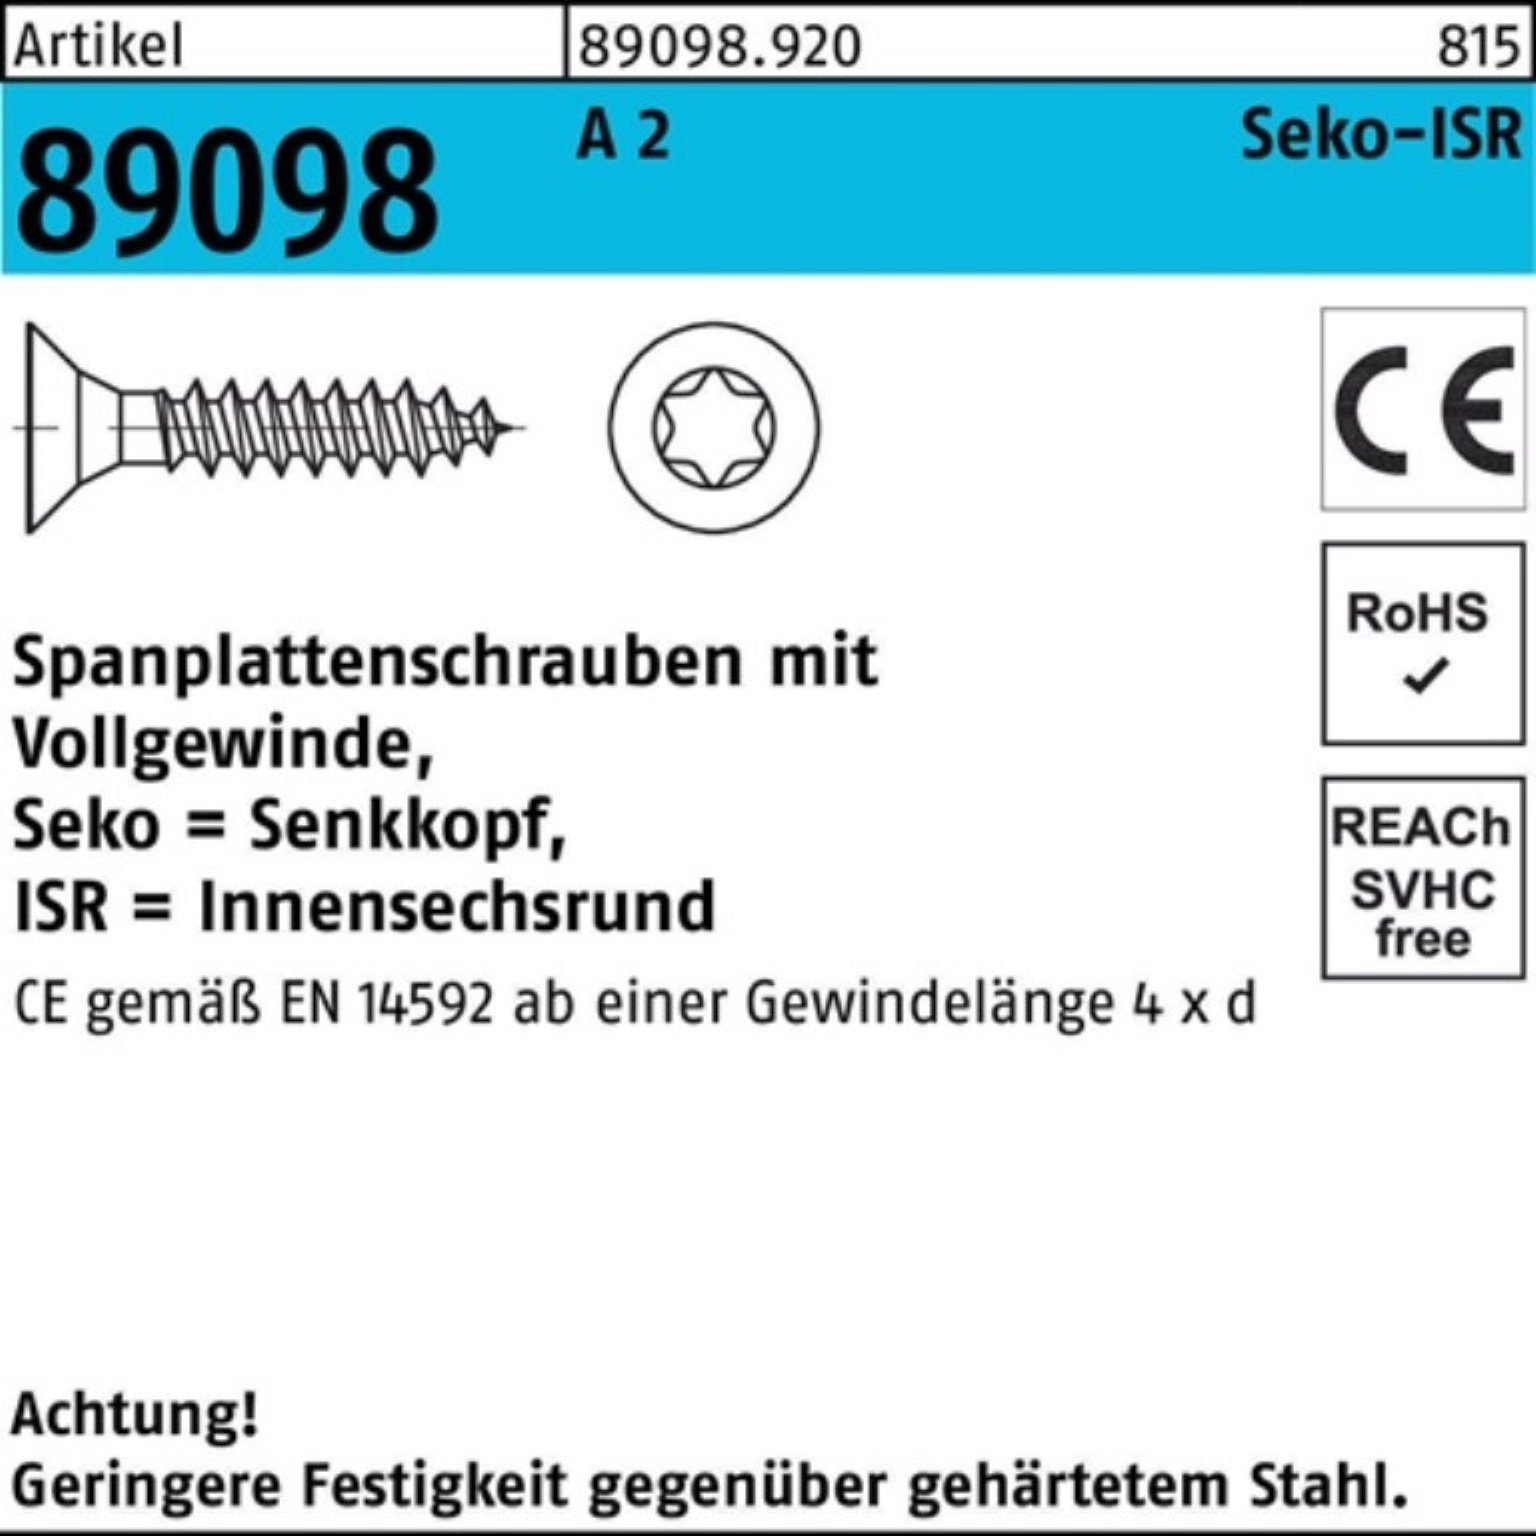 Reyher Spanplattenschraube 1000er Pack Spanplattenschraube R 89098 SEKO ISR VG 4x 35-T20 A 2 1000